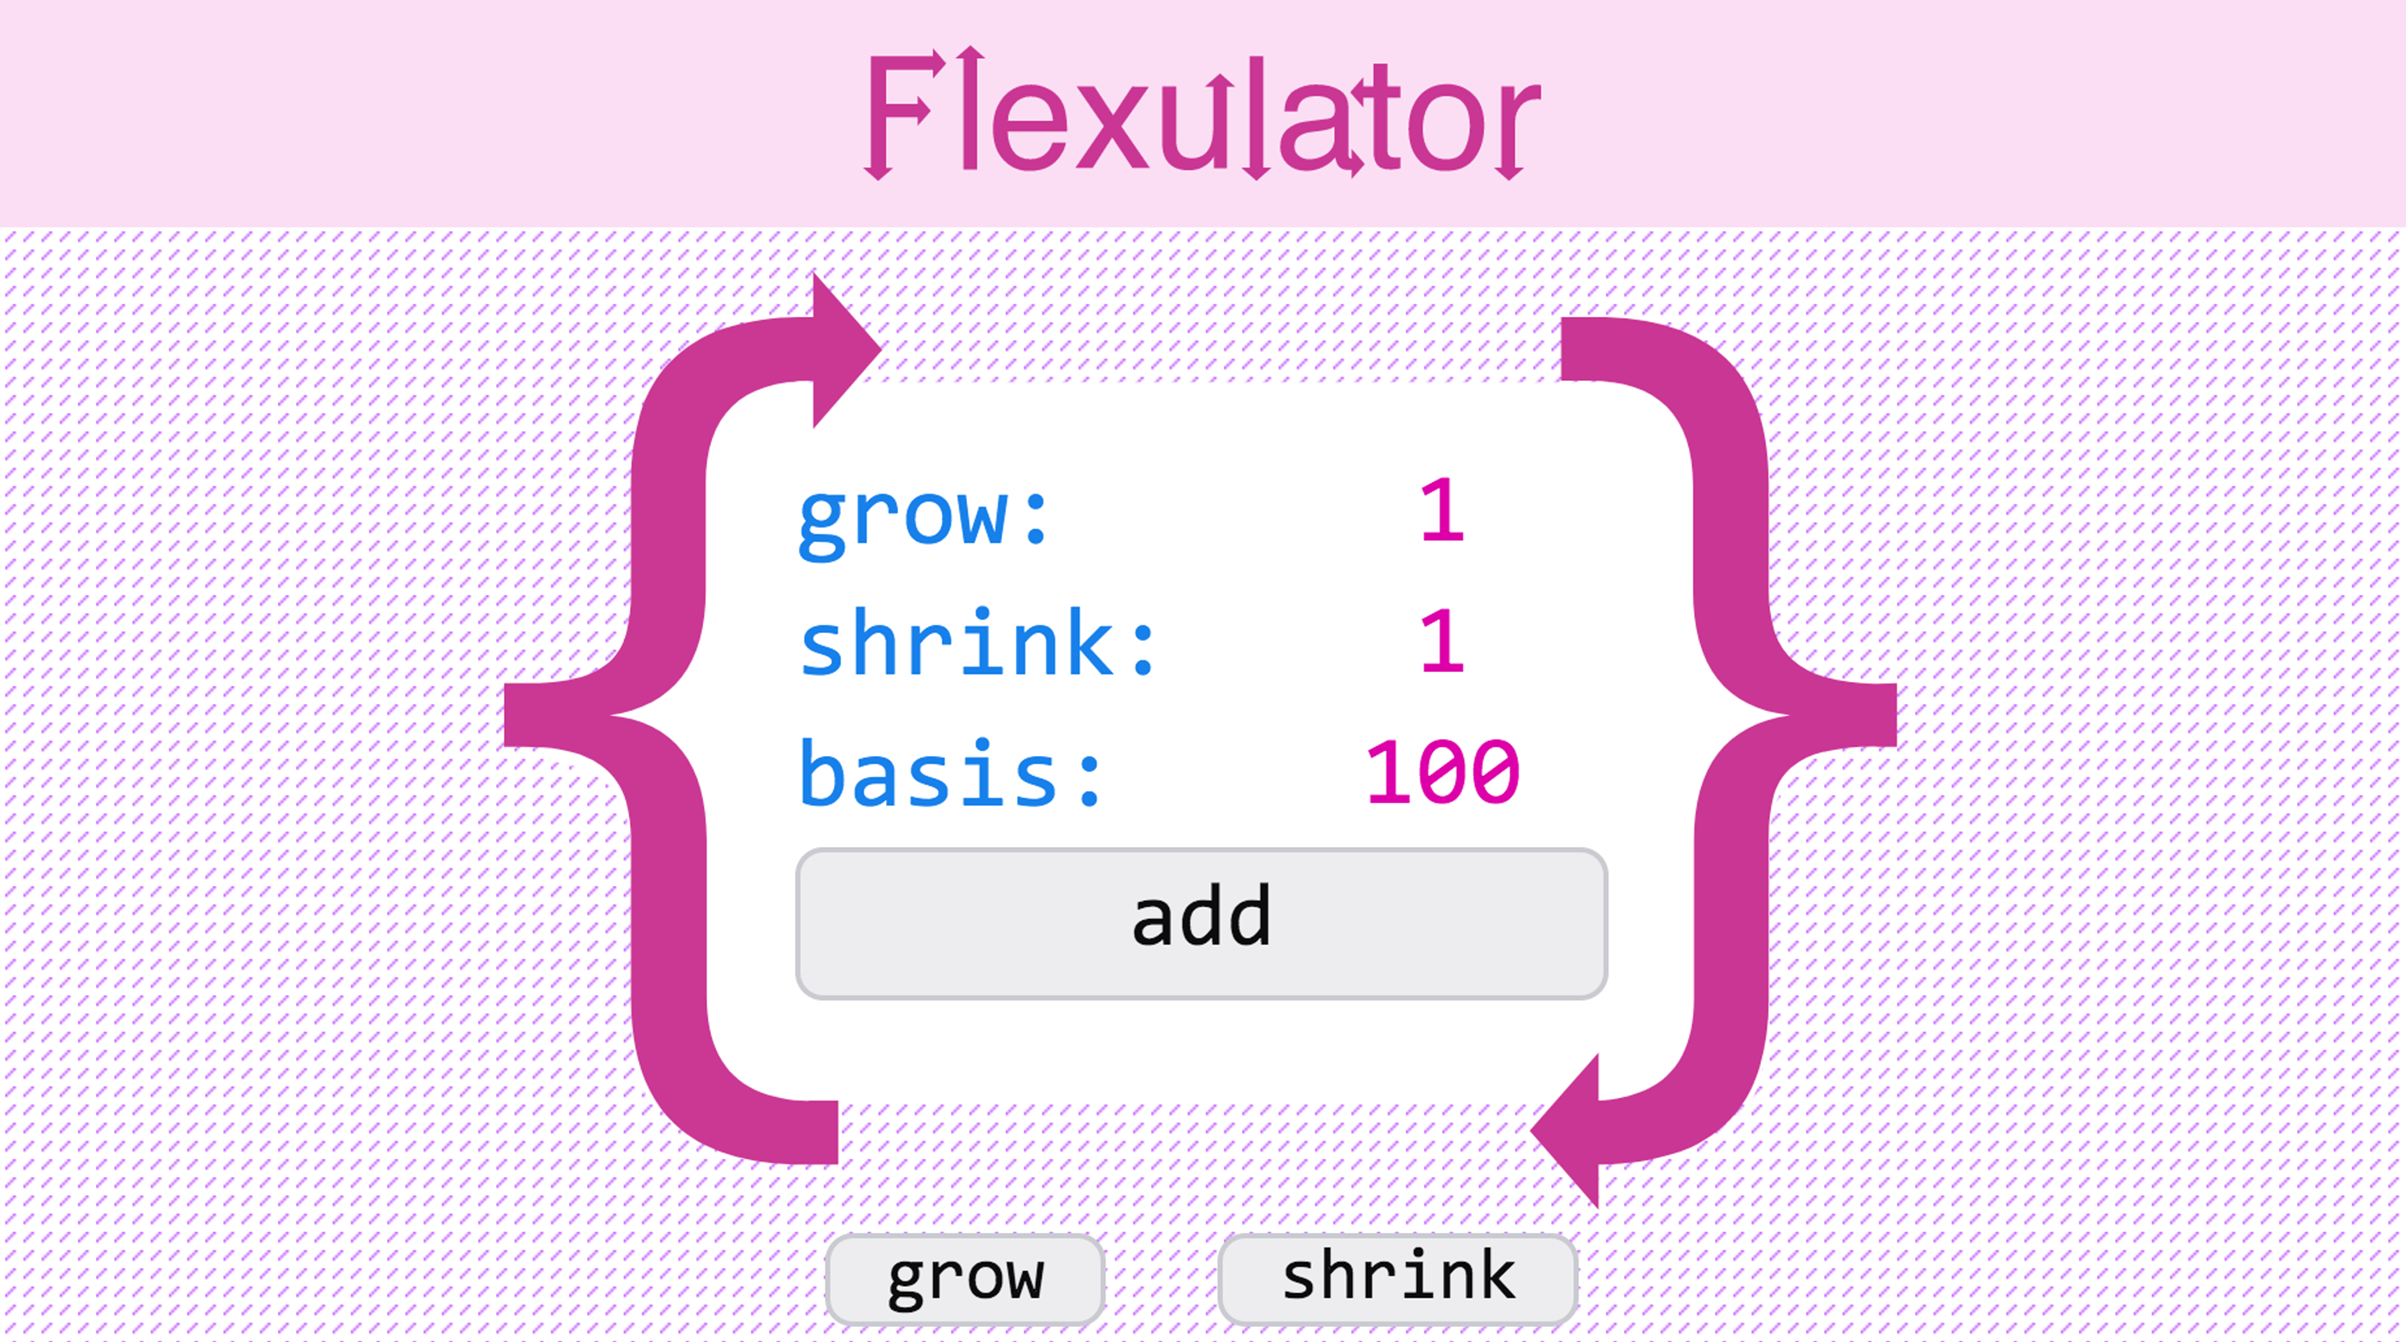 Flexulator